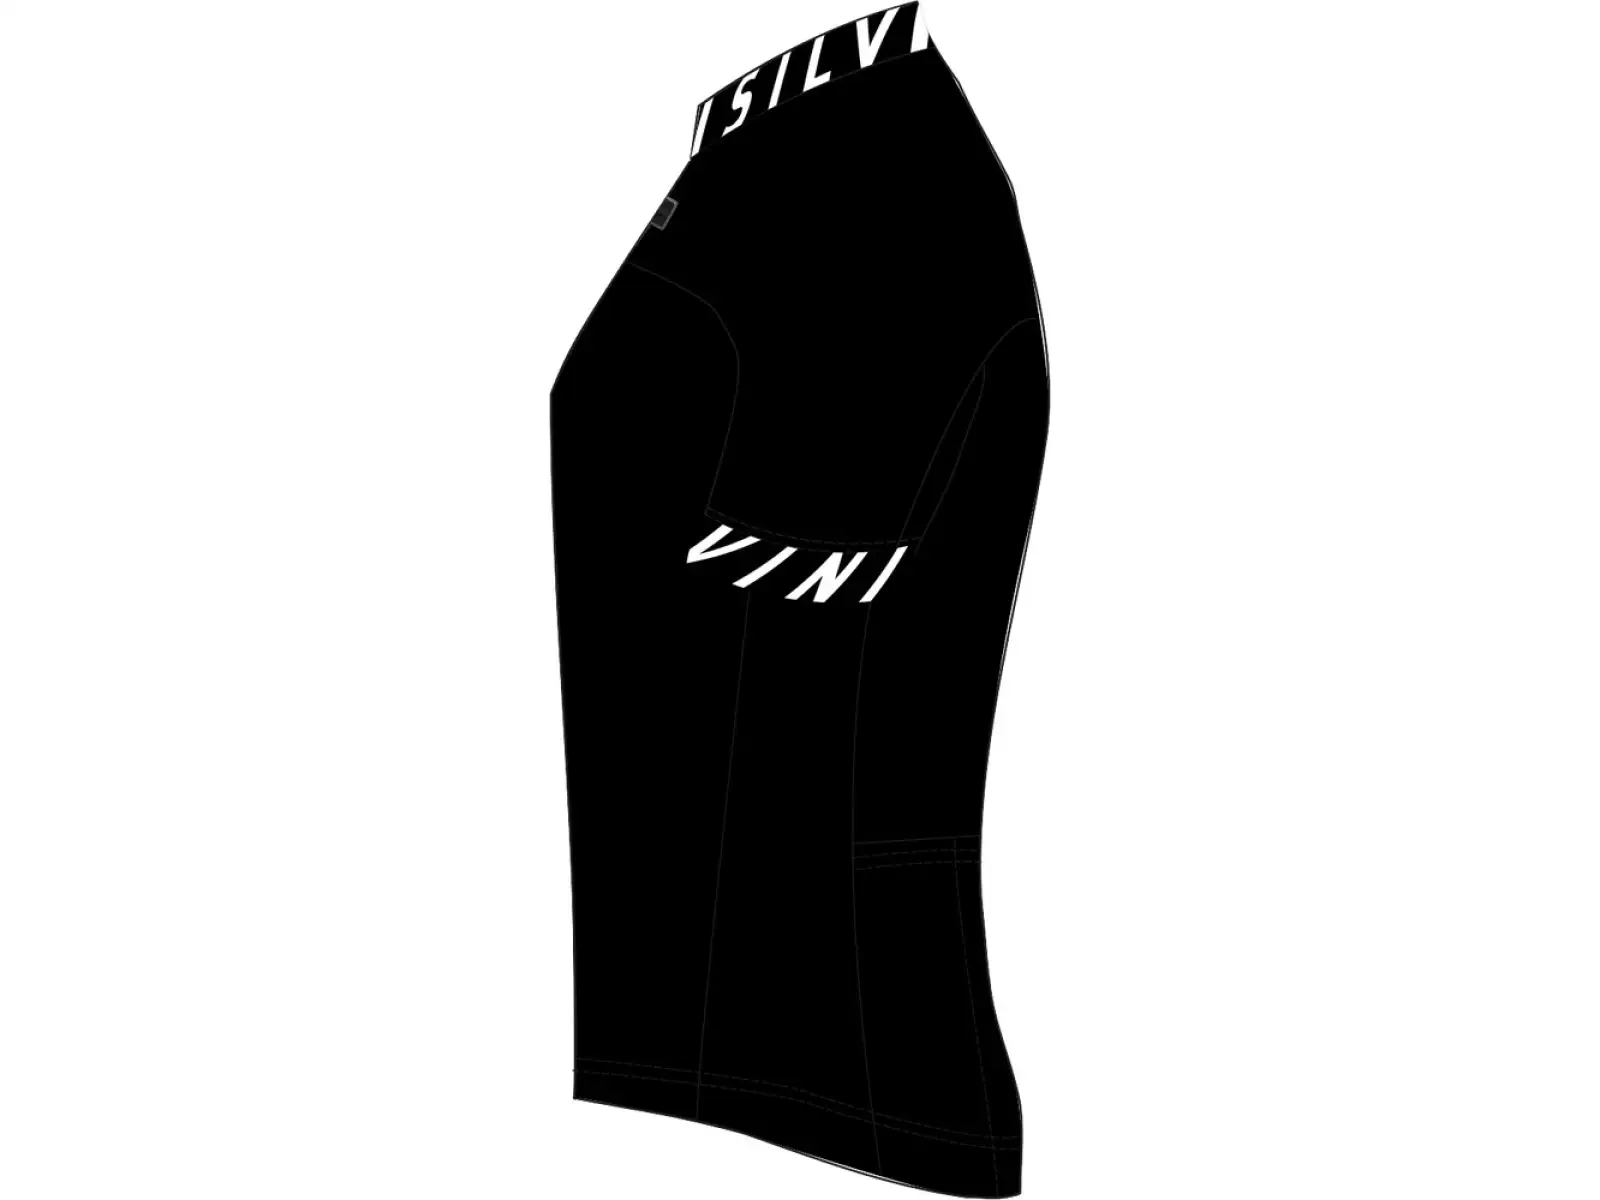 Silvini Stelvio pánský dres krátký rukáv black/white